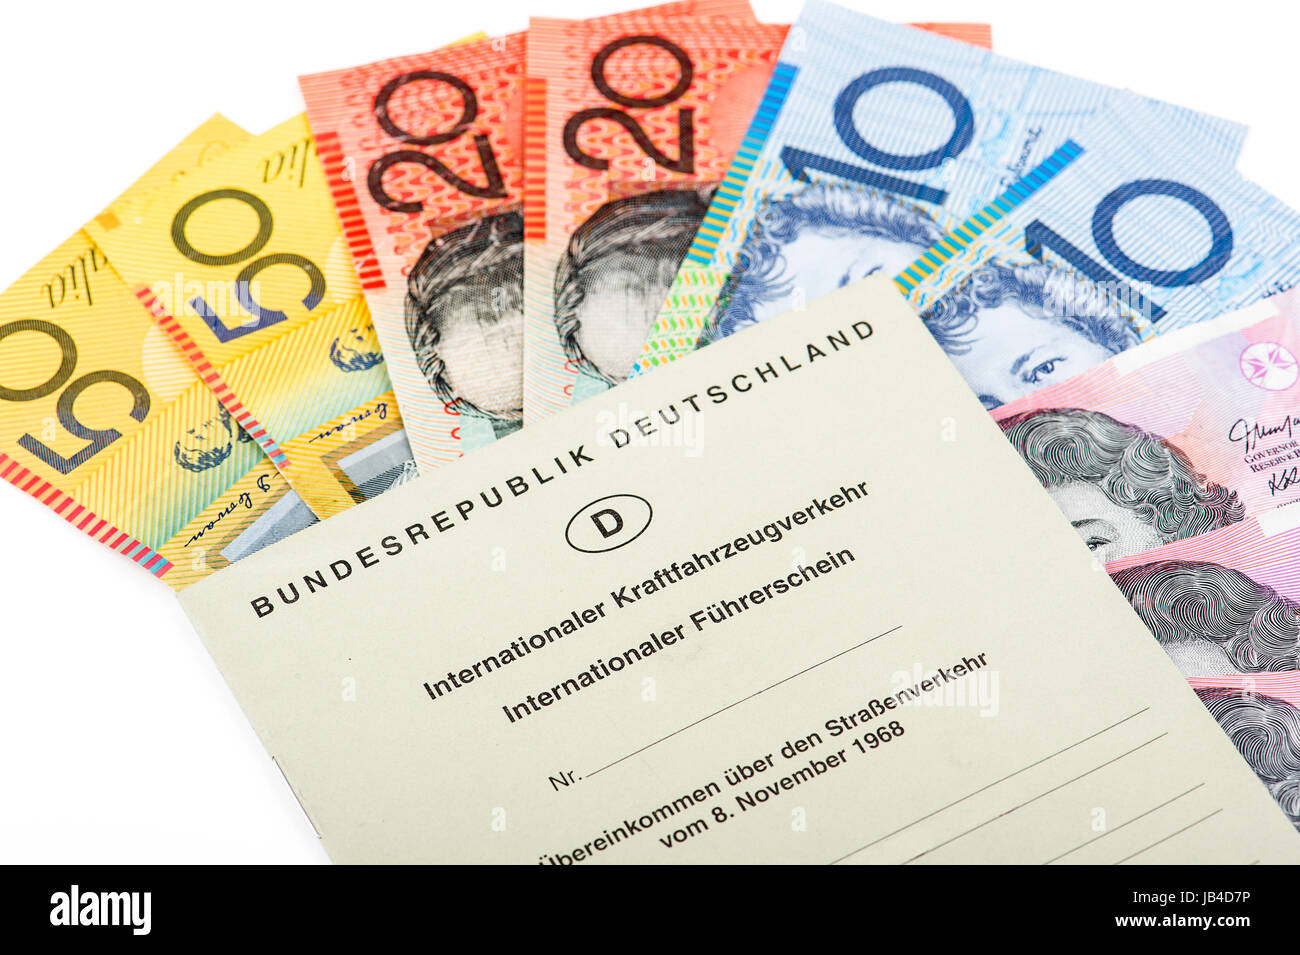 Australischer Dollar mit Internationalem Führerschein Stock Photo